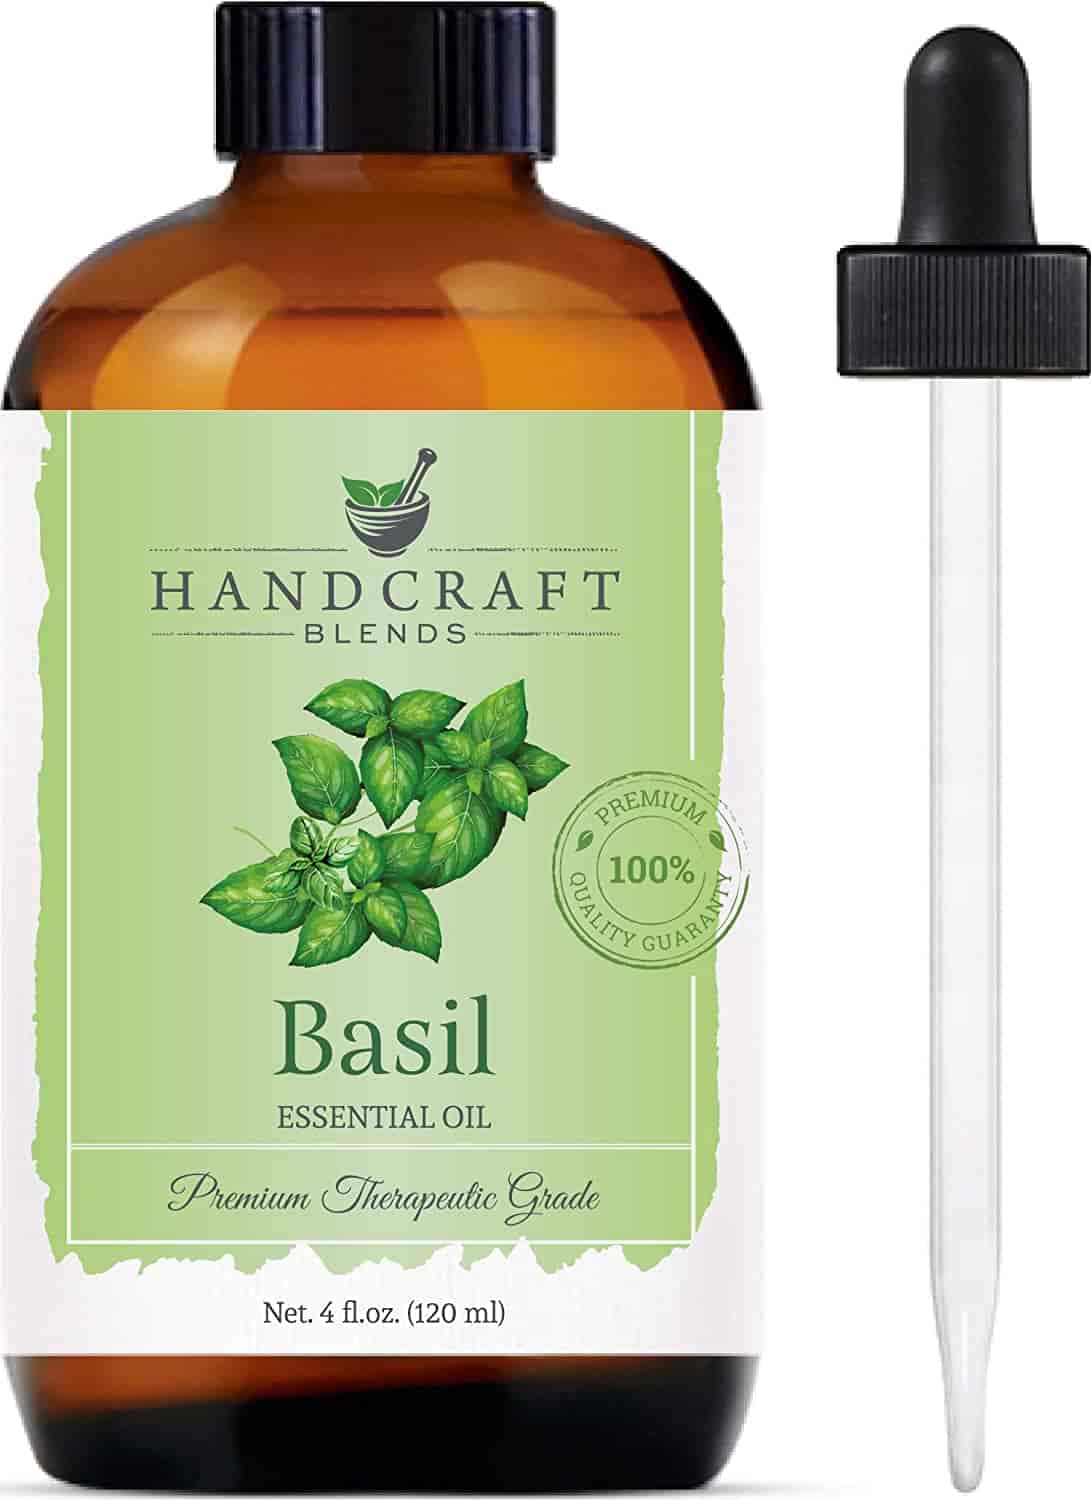 handcraft basil oil